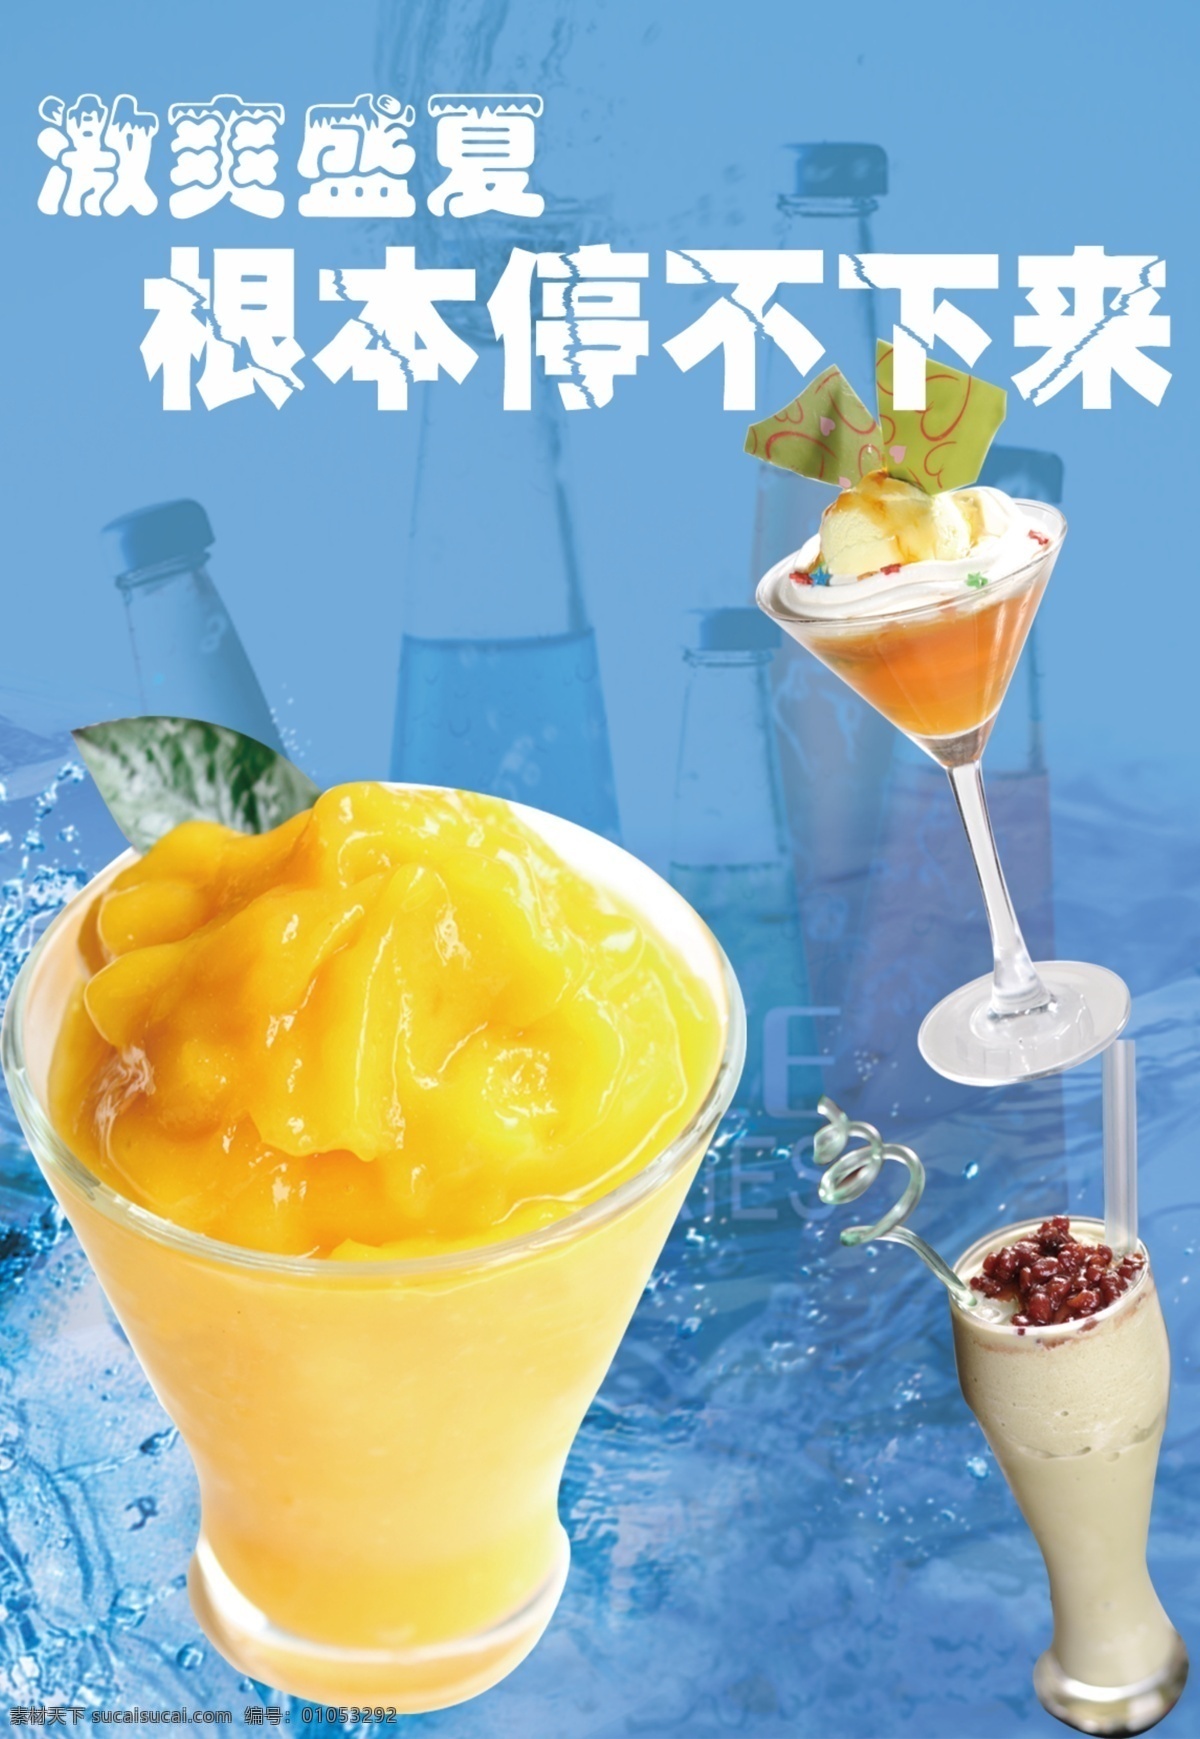 冷饮海报 冰沙 冰淇淋 冰 蓝色底 汽水 广告设计模板 源文件